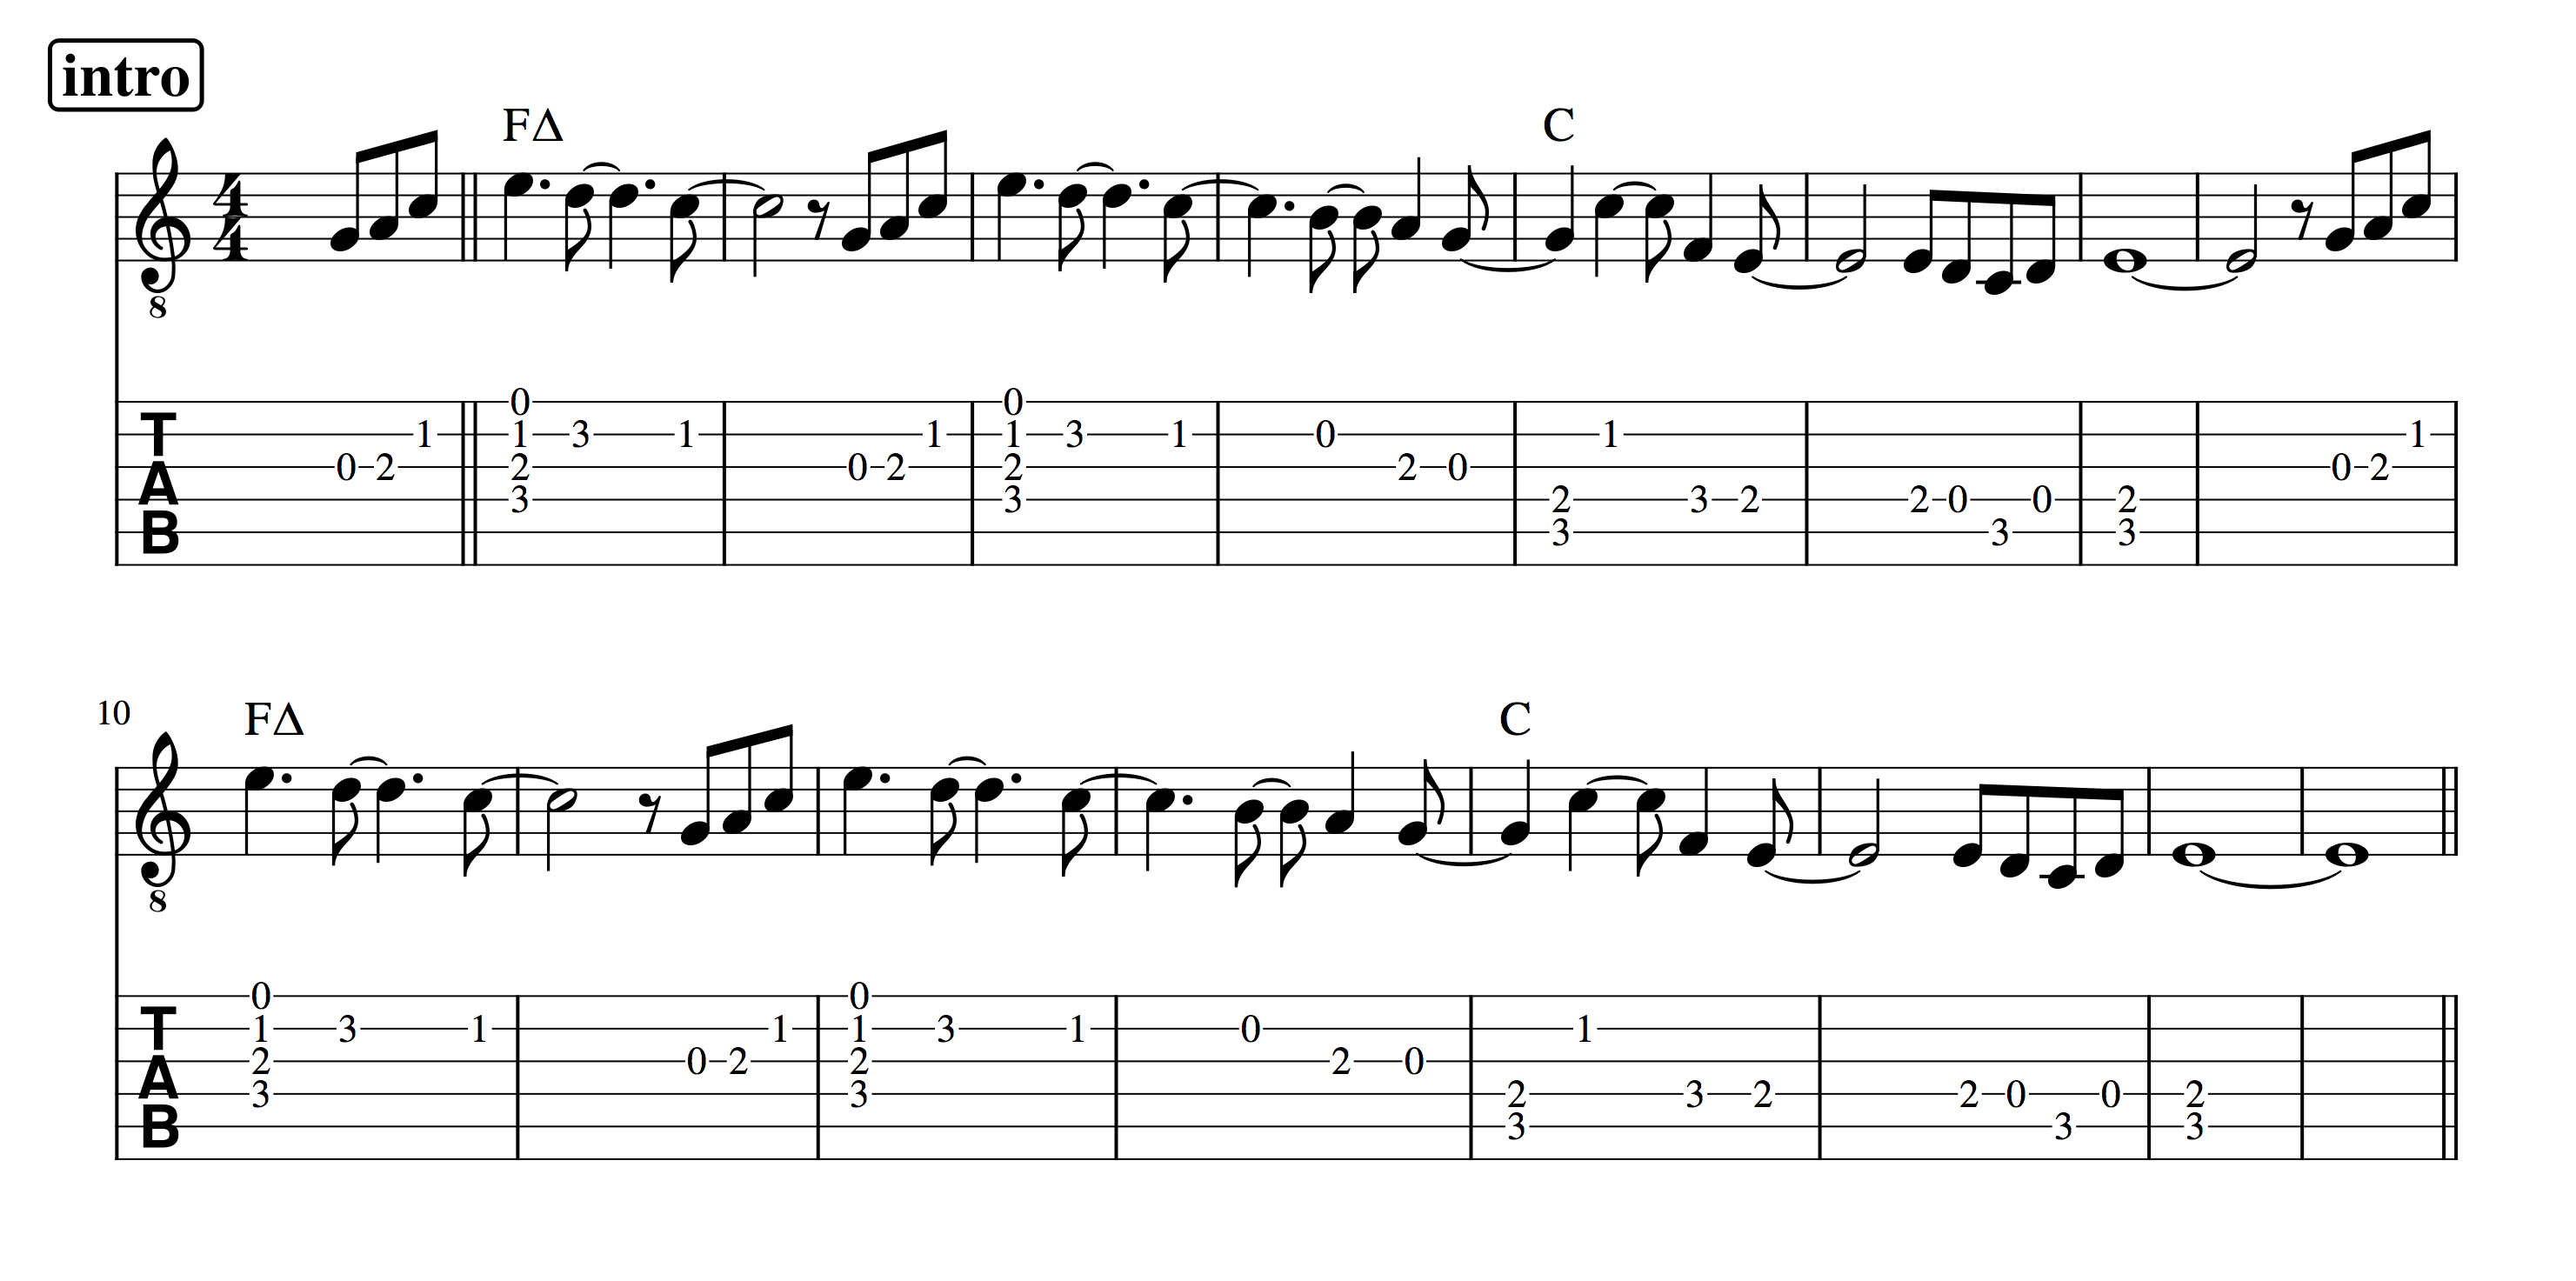 Partitura y tablatura para guitarra de la introducción de Entre la espada y la pared de Fito y Fitipaldis